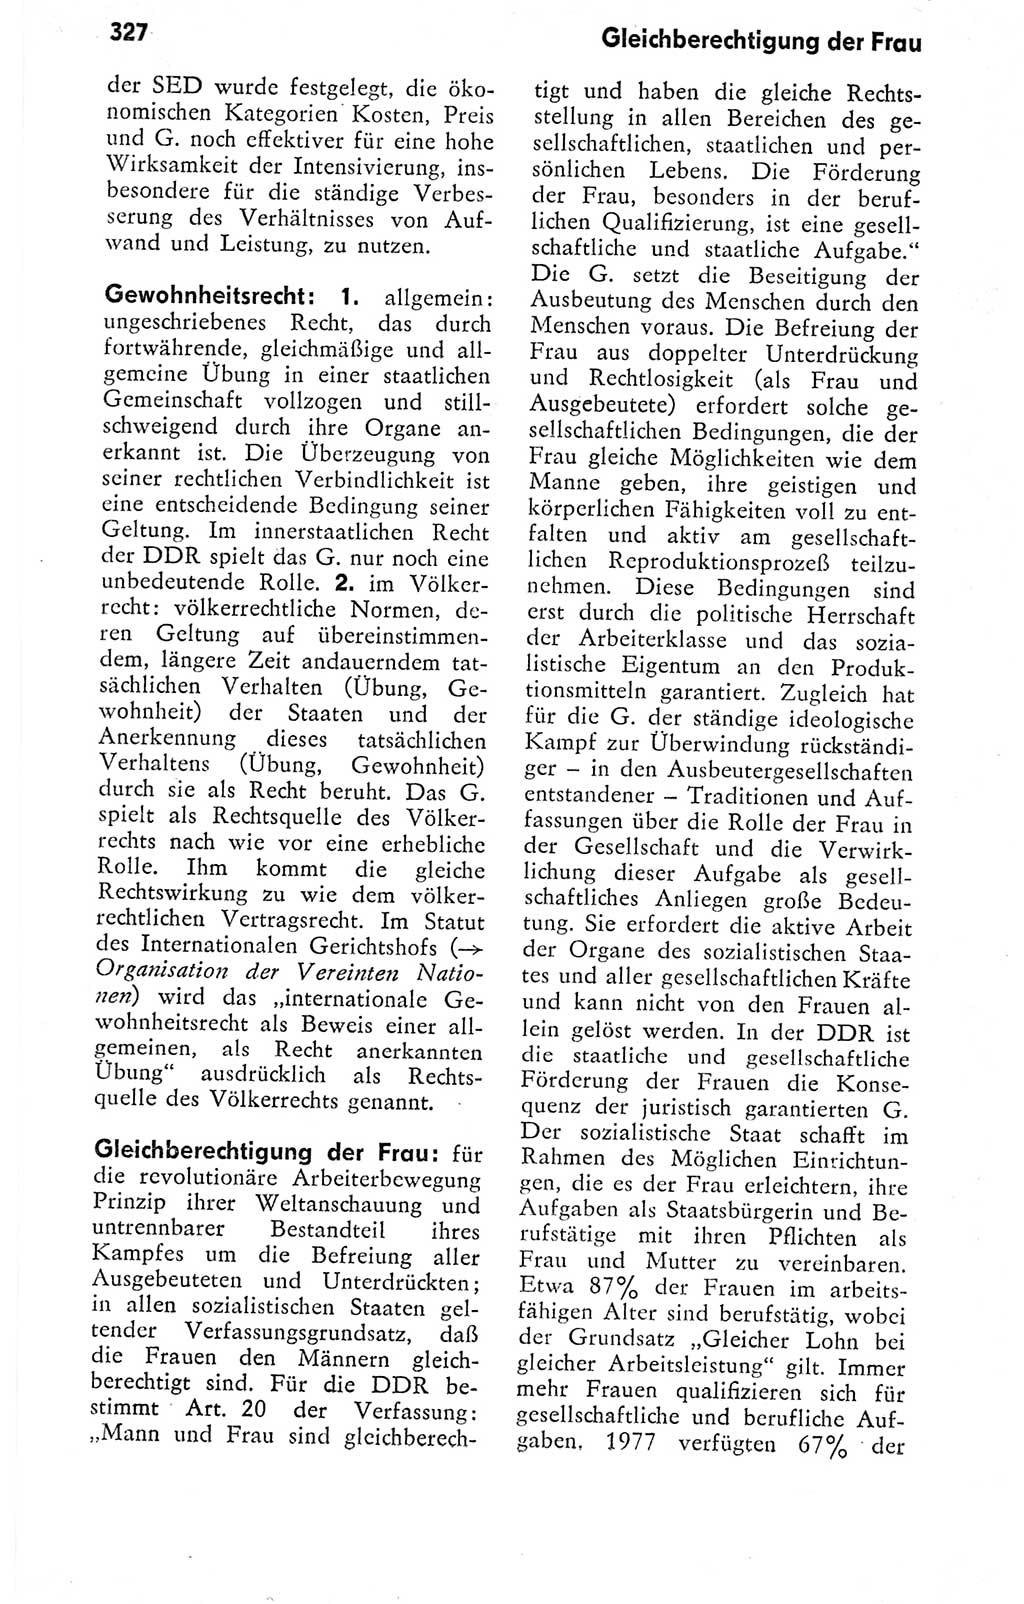 Kleines politisches Wörterbuch [Deutsche Demokratische Republik (DDR)] 1978, Seite 327 (Kl. pol. Wb. DDR 1978, S. 327)